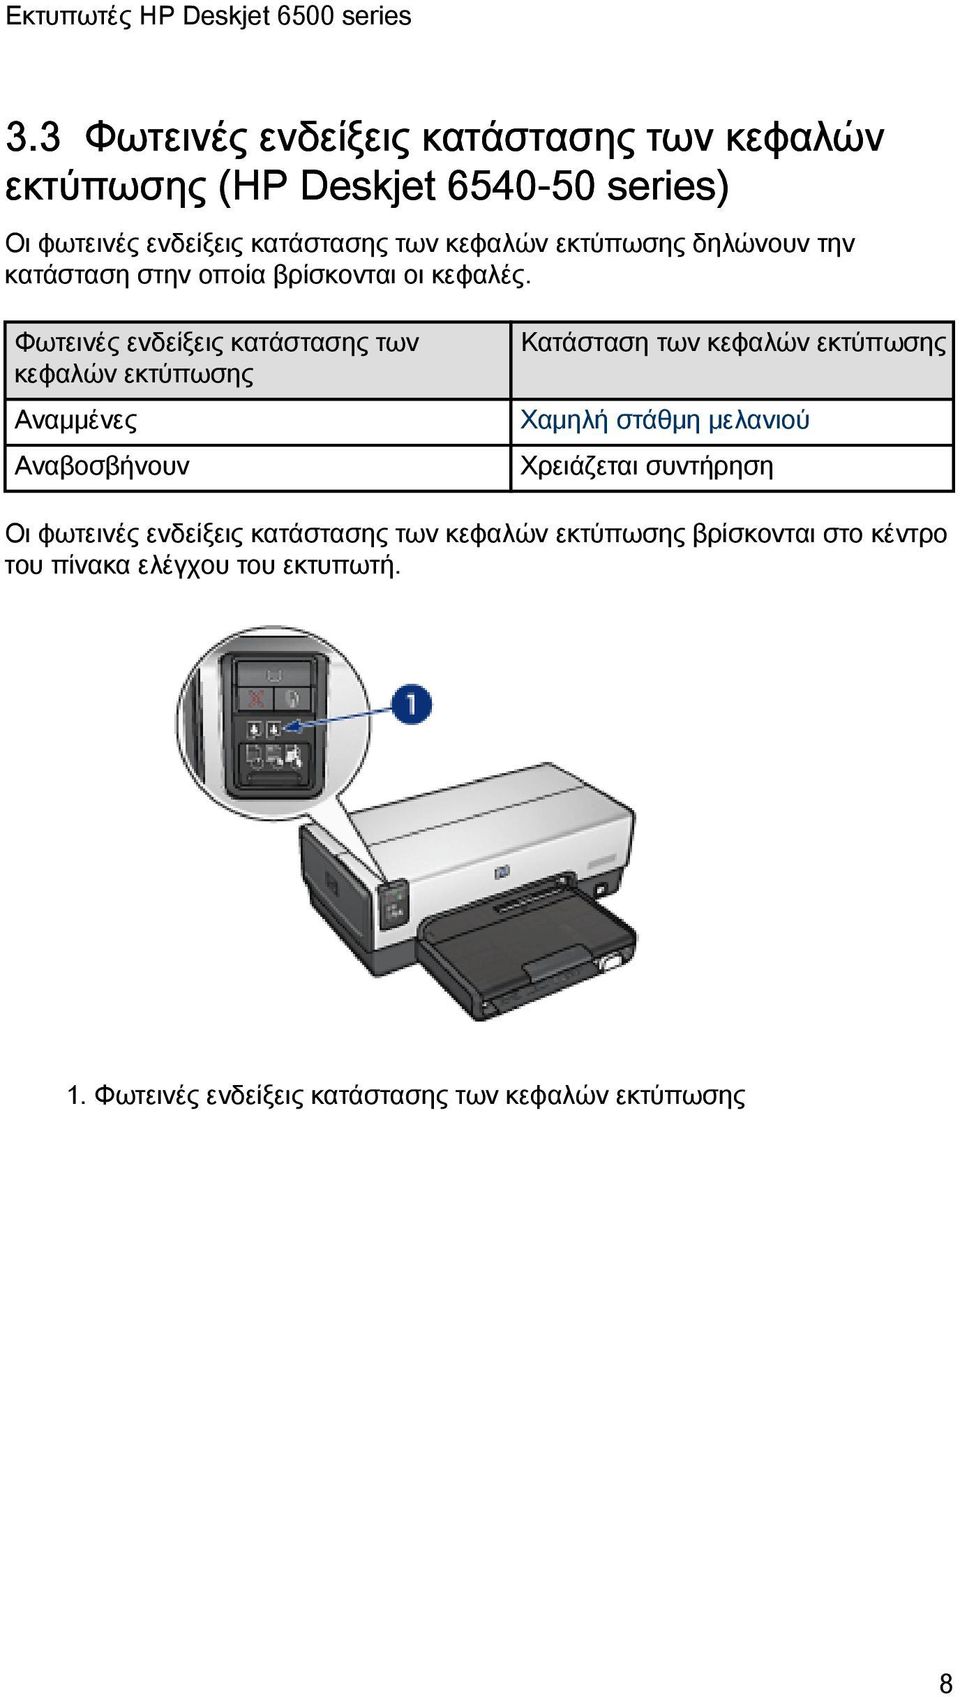 1 Εκτυπωτές HP Deskjet 6500 series - PDF Free Download